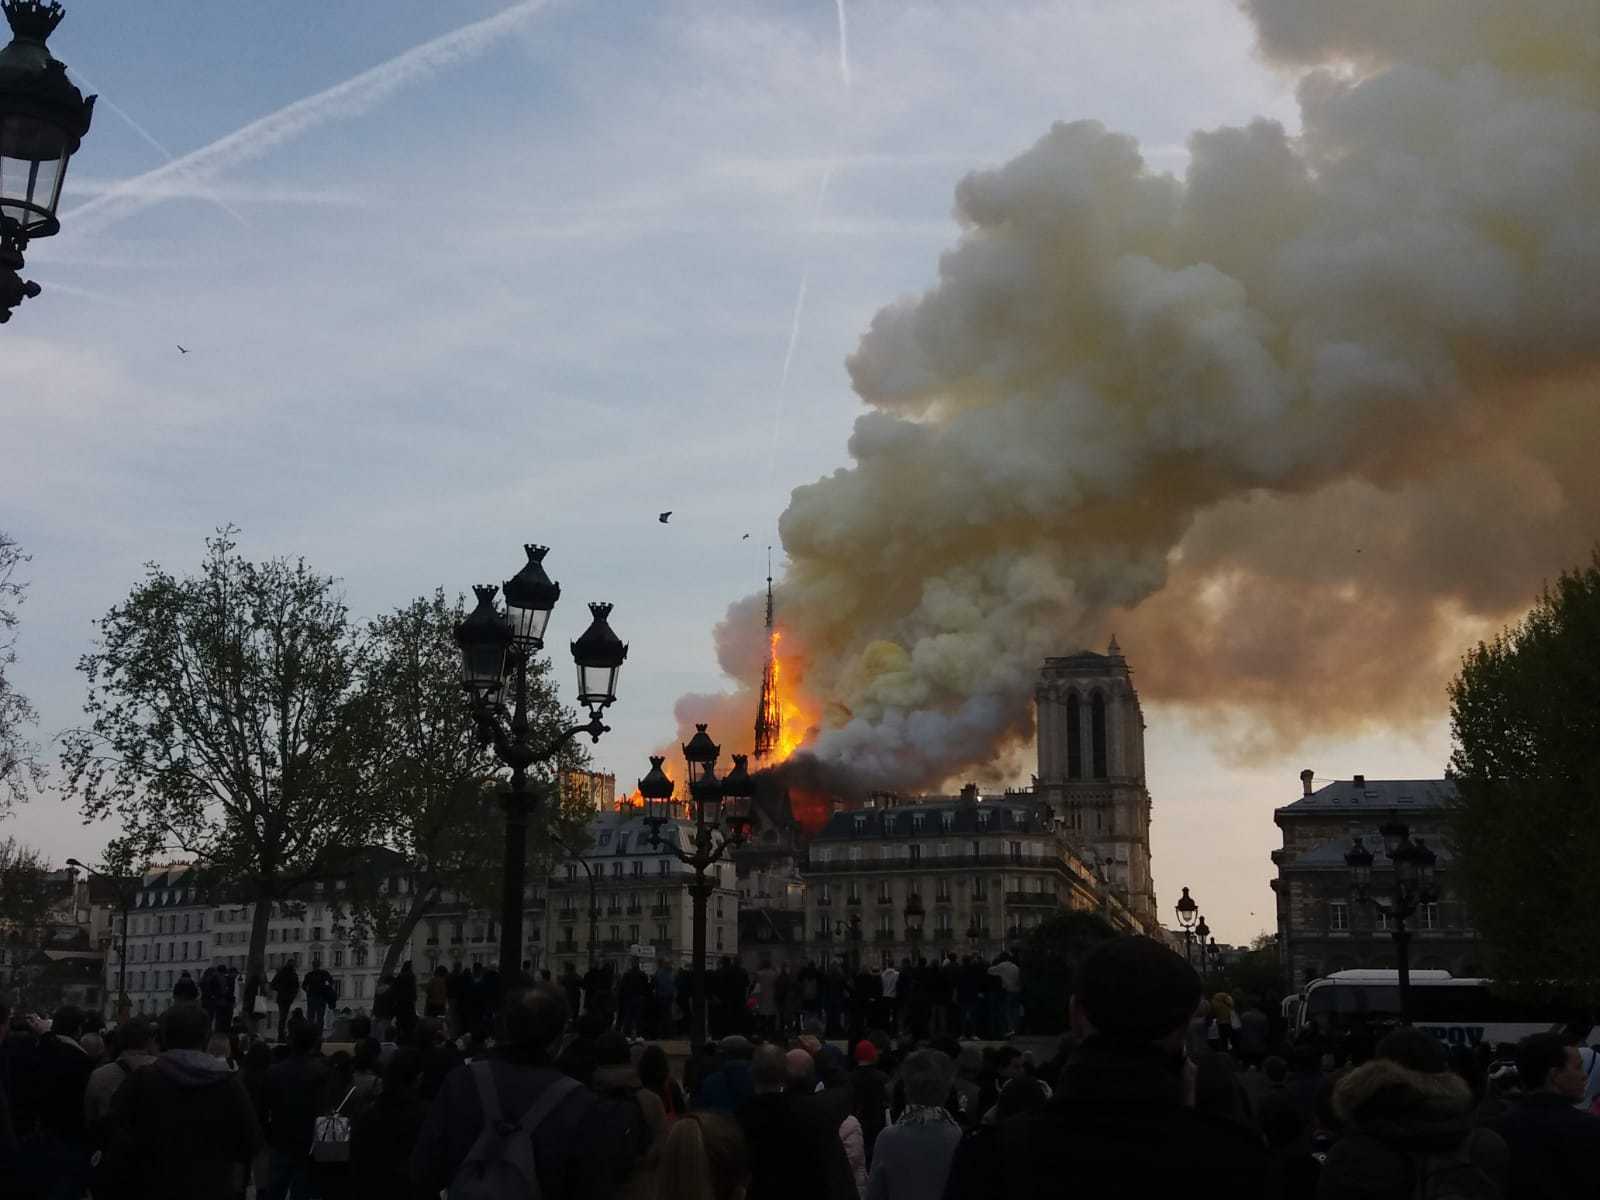 ULTIMĂ ORĂ: Incendiu puternic la Notre-Dame. Catedrala simbol a Parisului este mistuită de flăcări. Reportaj ZF de la faţa locului. Galerie FOTO, VIDEO. 